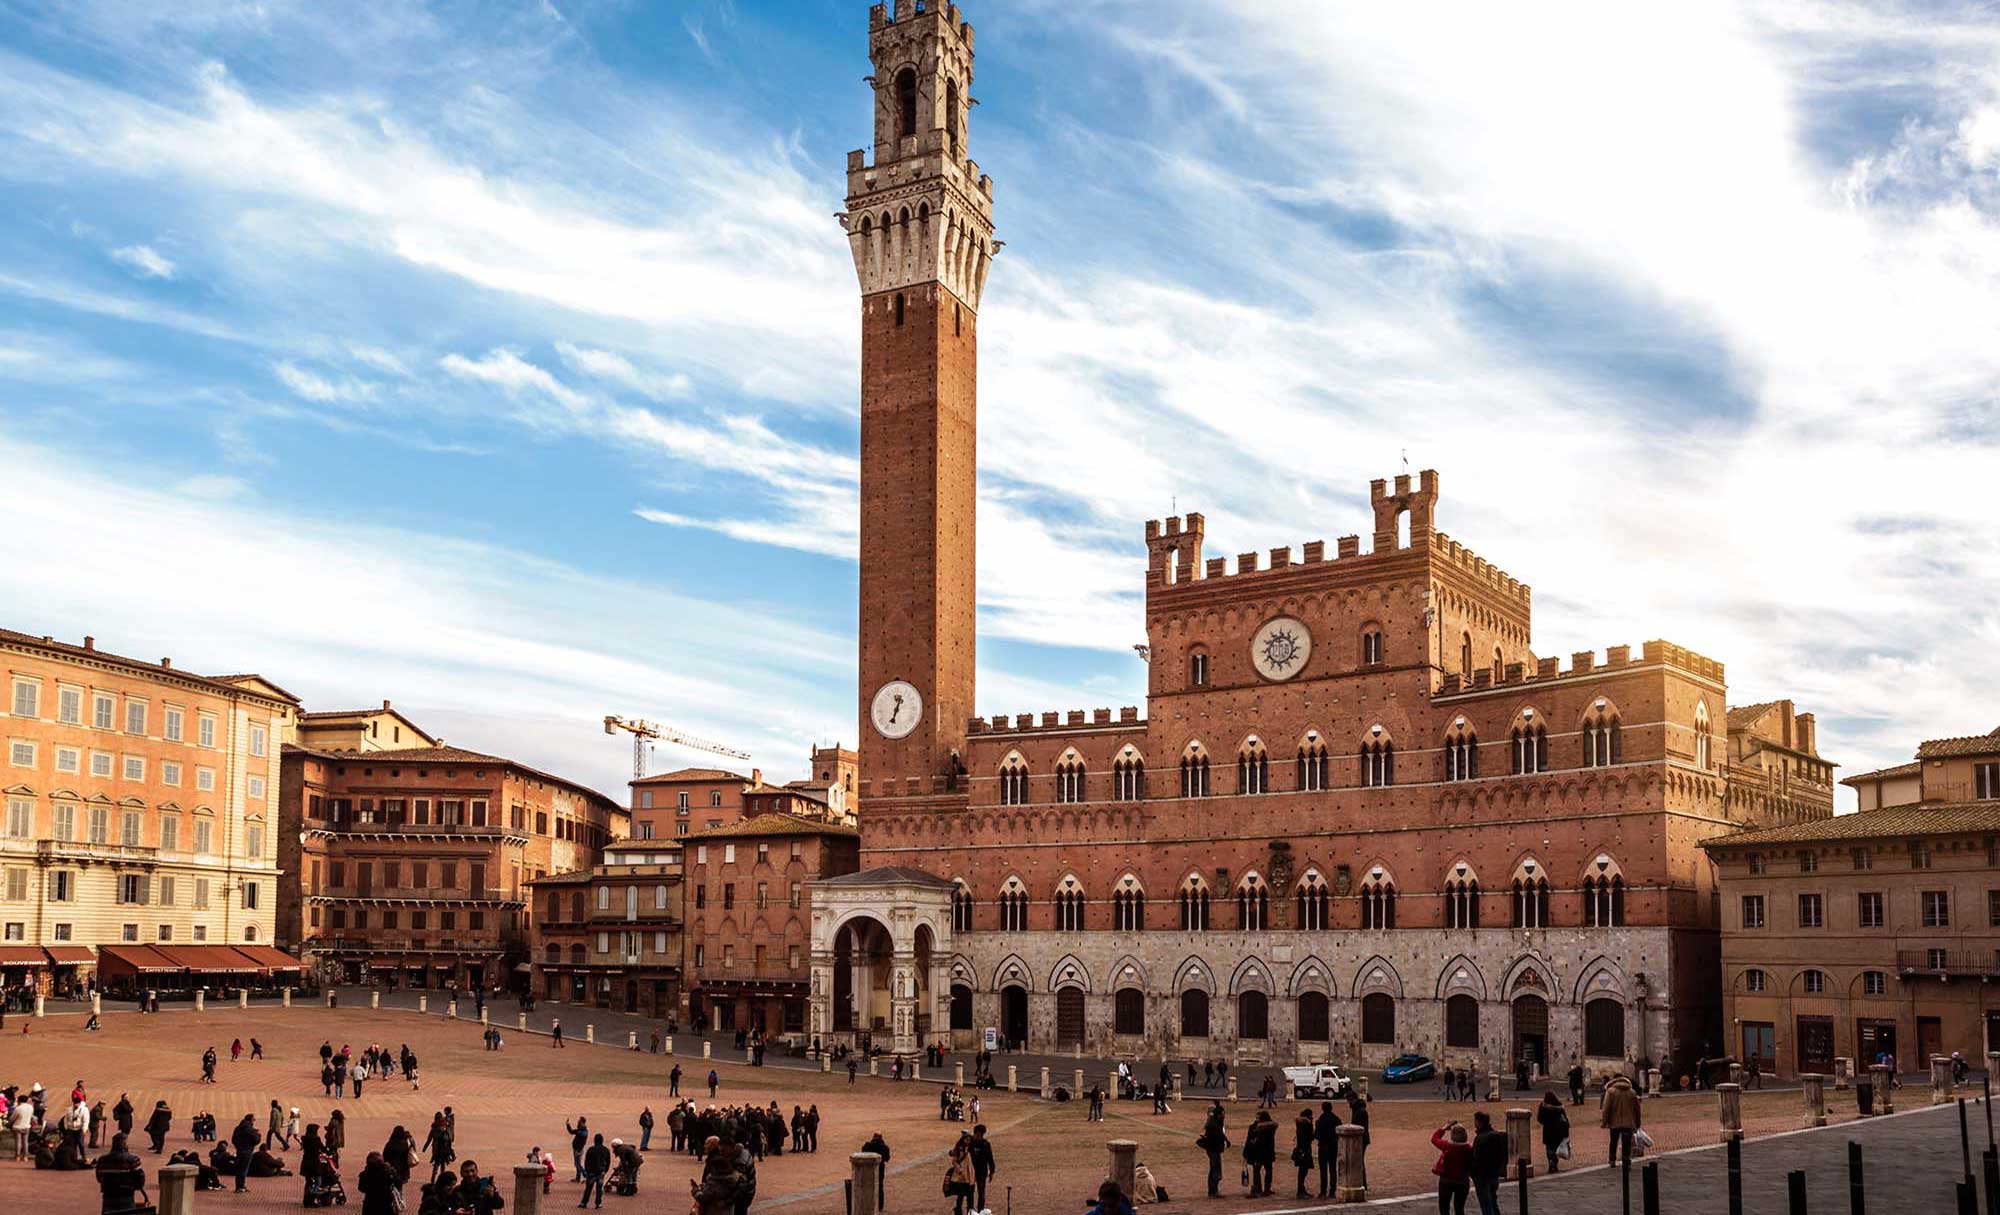 Treni per Siena: orari e offerte biglietti treno | Trainline